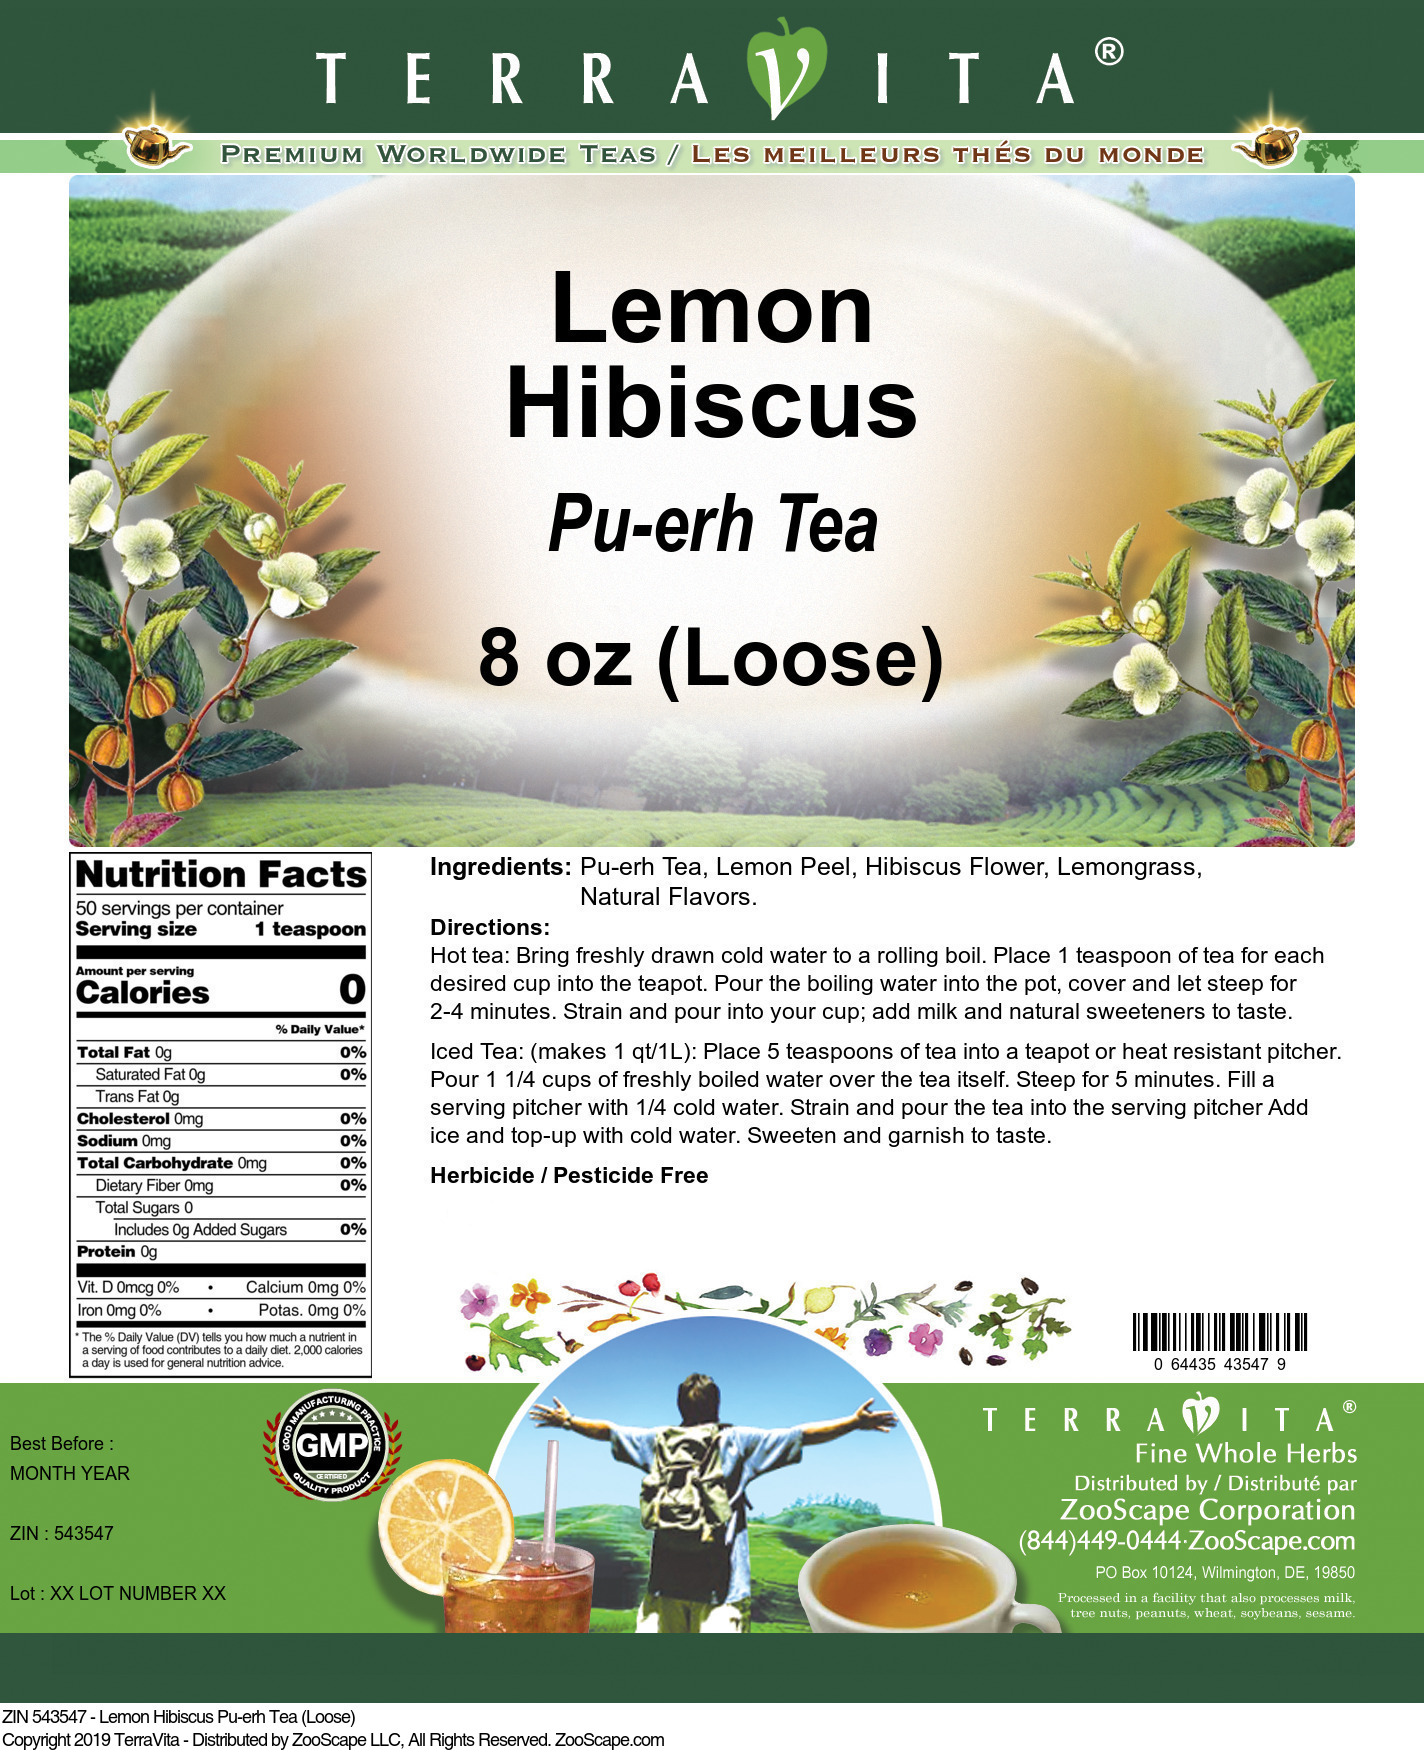 Lemon Hibiscus Pu-erh Tea (Loose) - Label